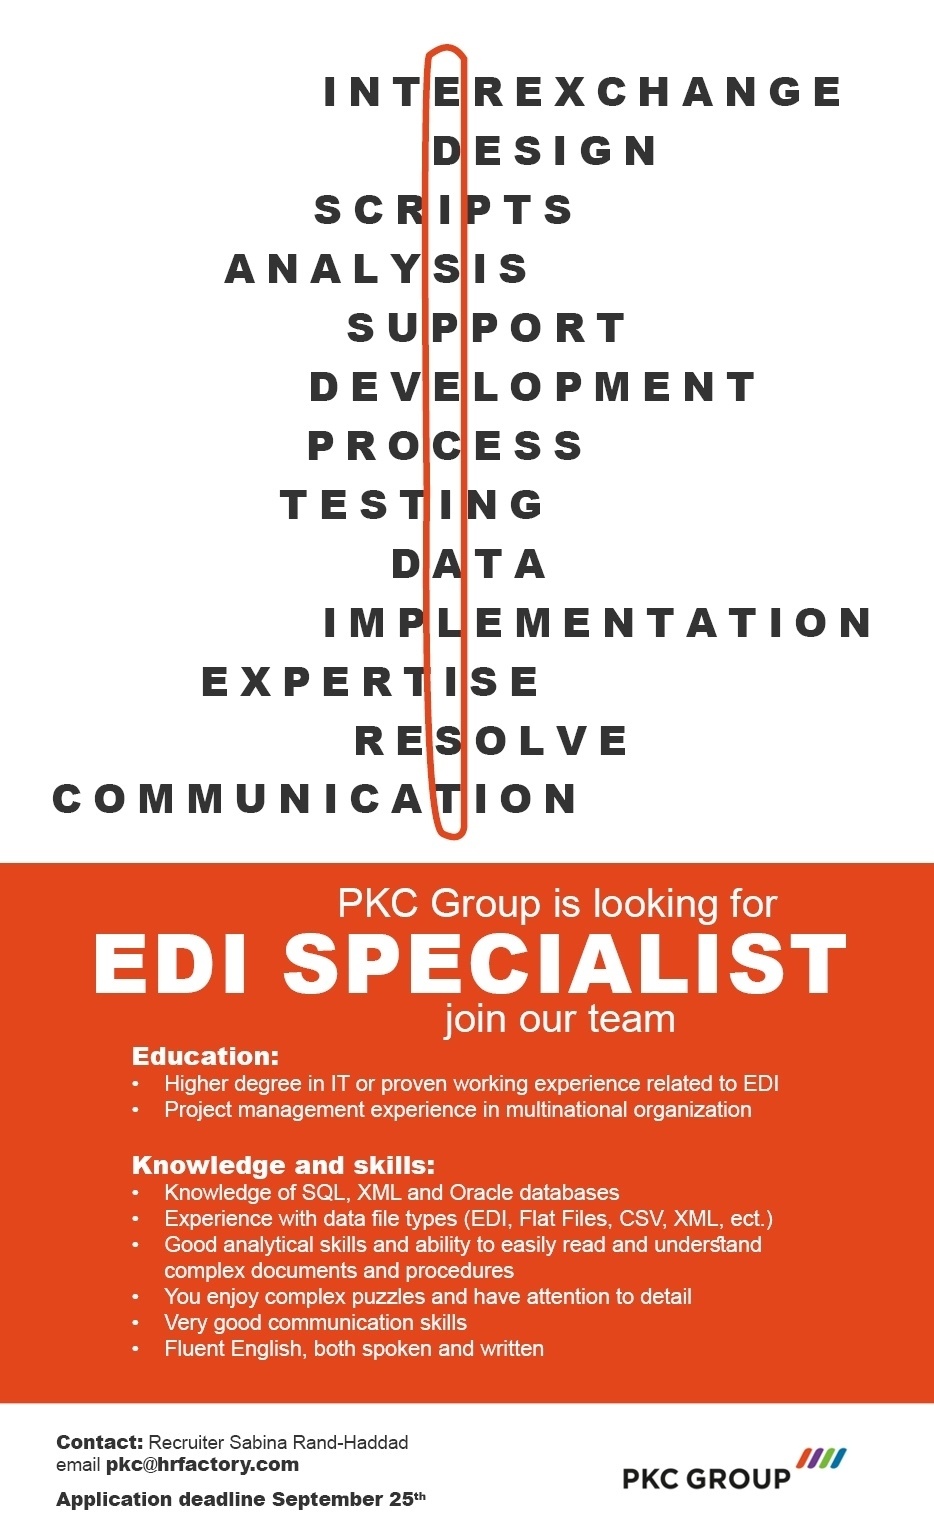 PKC Group EDI specialist